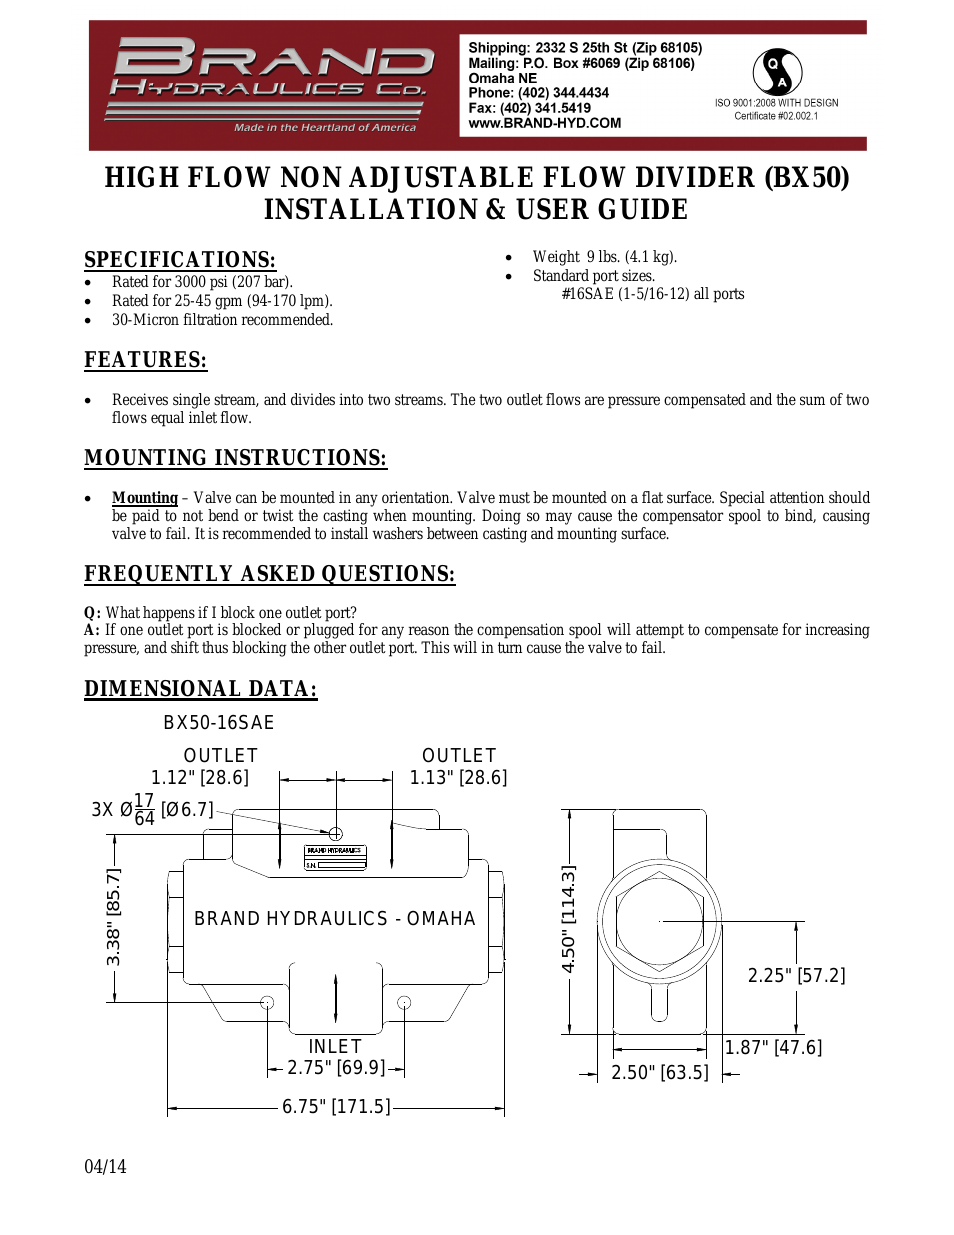 HIGH FLOW NON ADJUSTABLE FLOW DIVIDER (BX50)